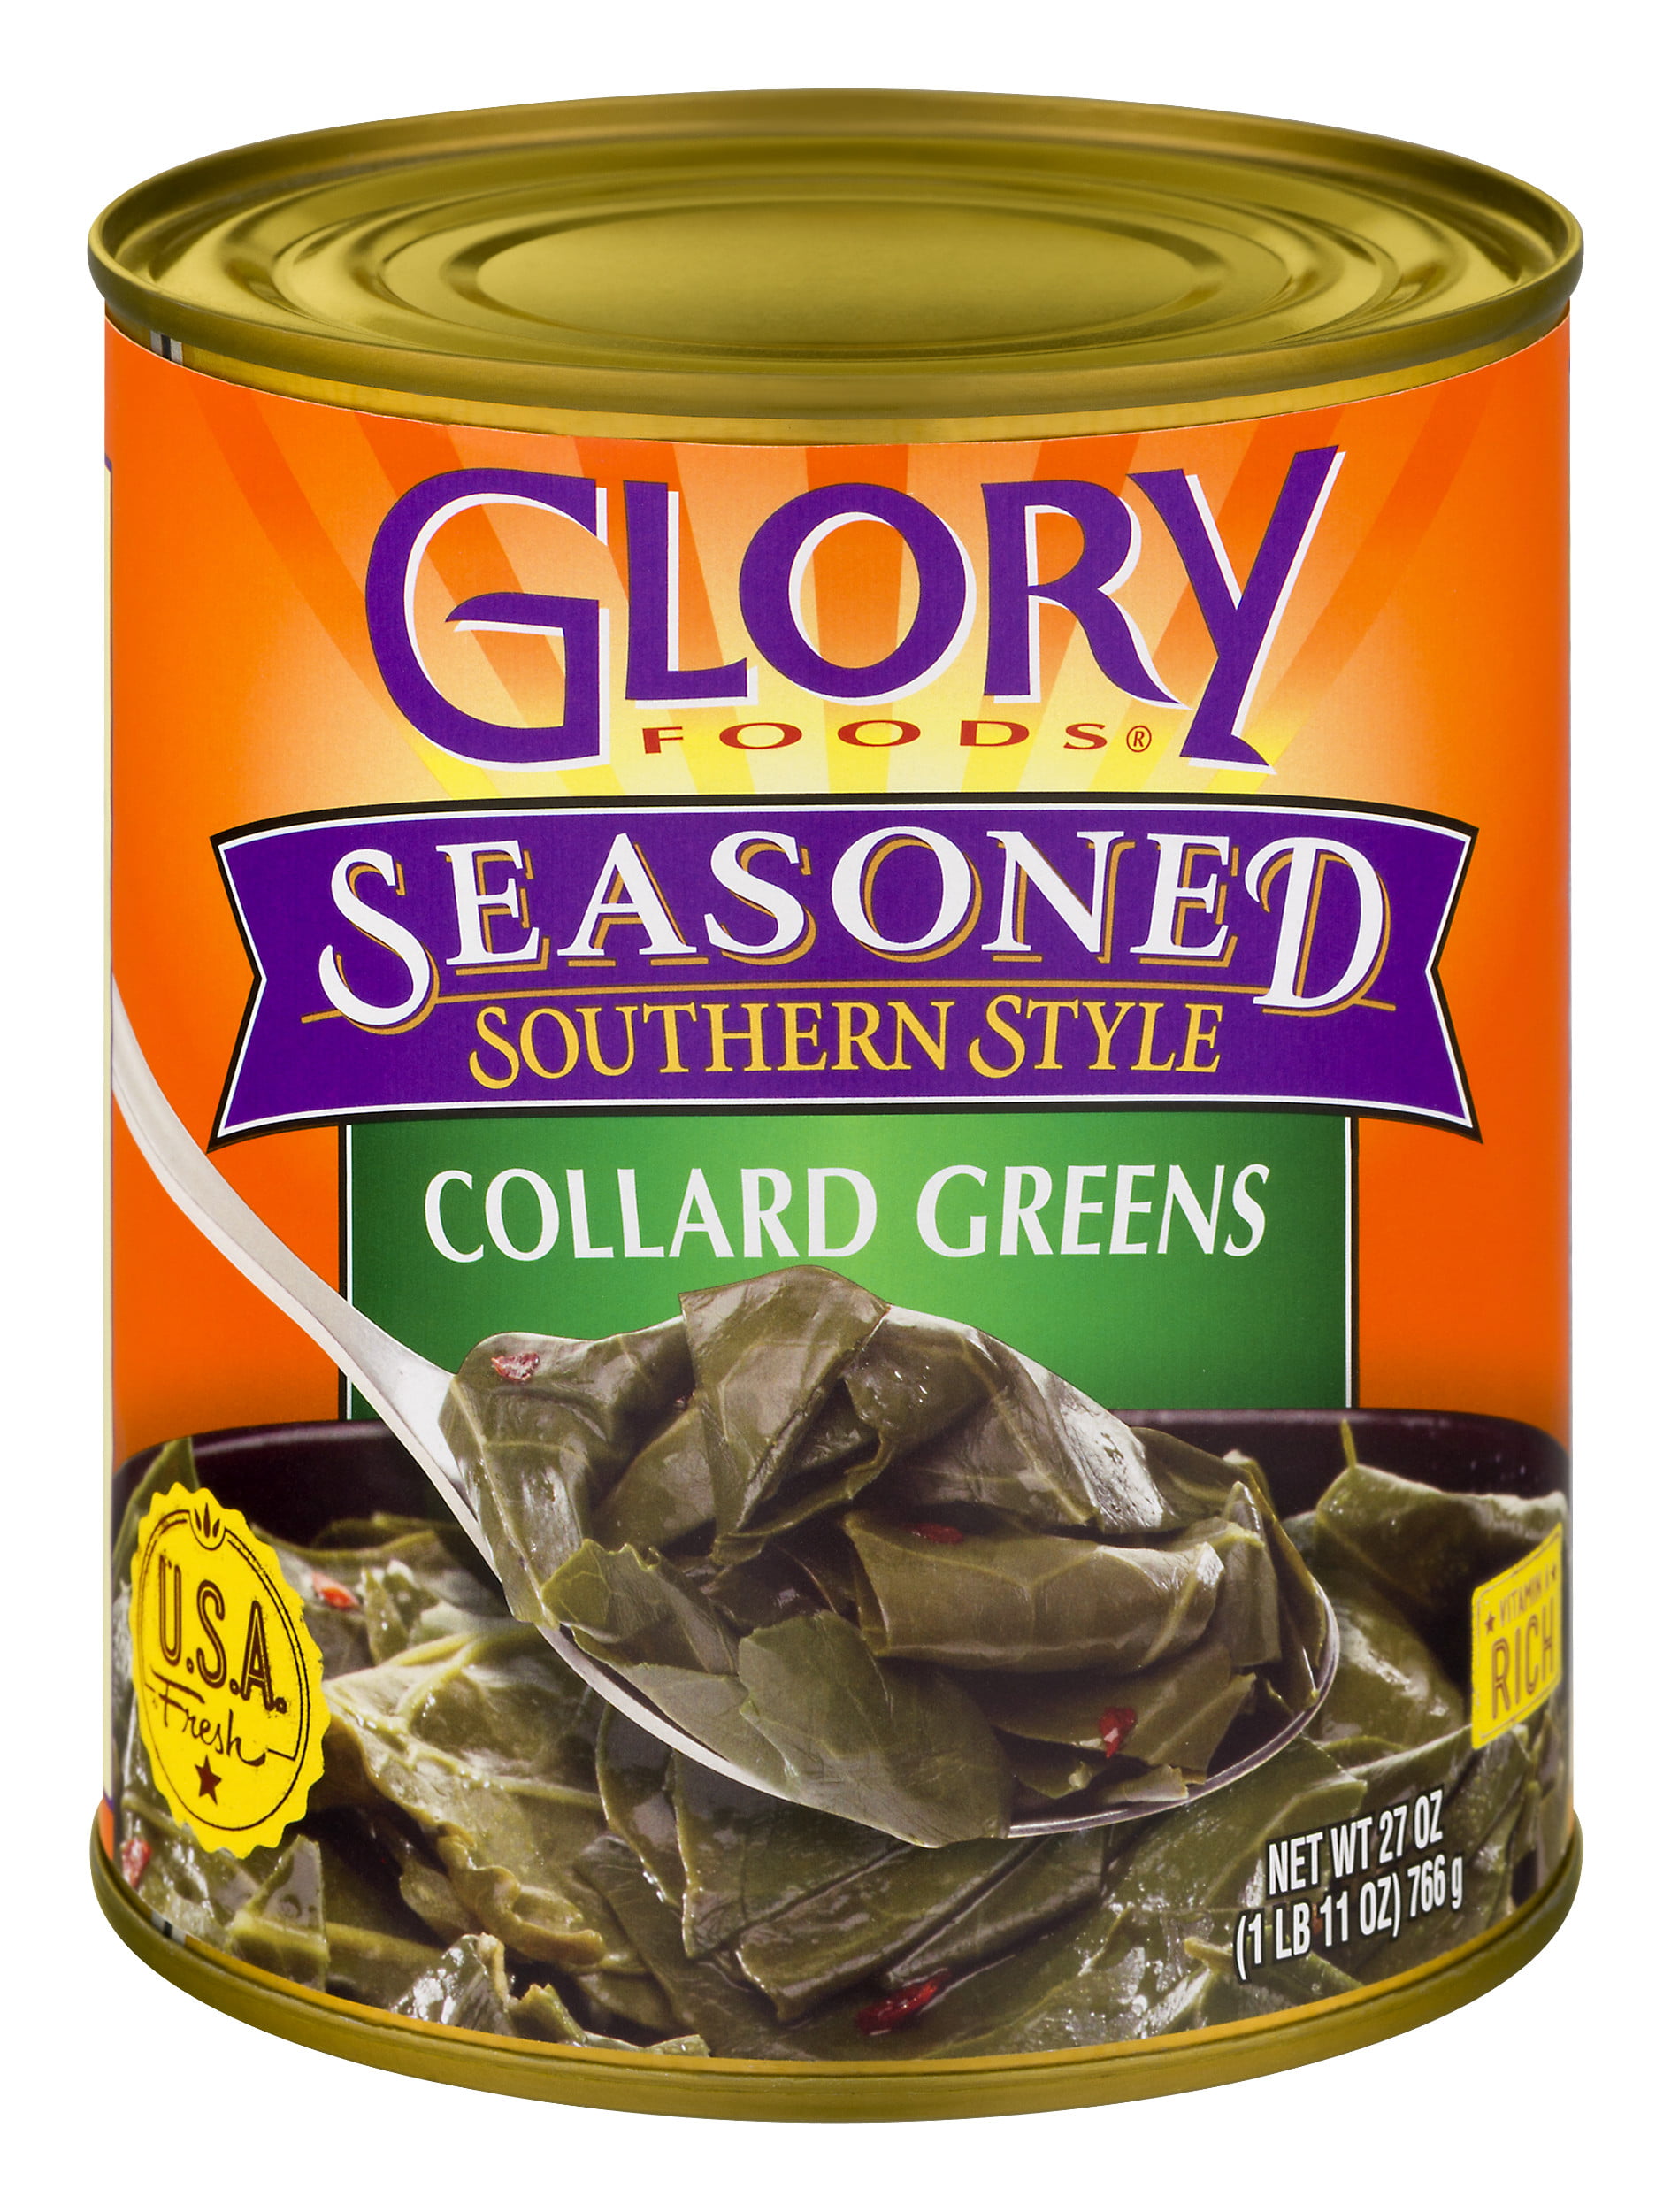 Glory food ООО. Seasoned. Glory food. Seasoned food